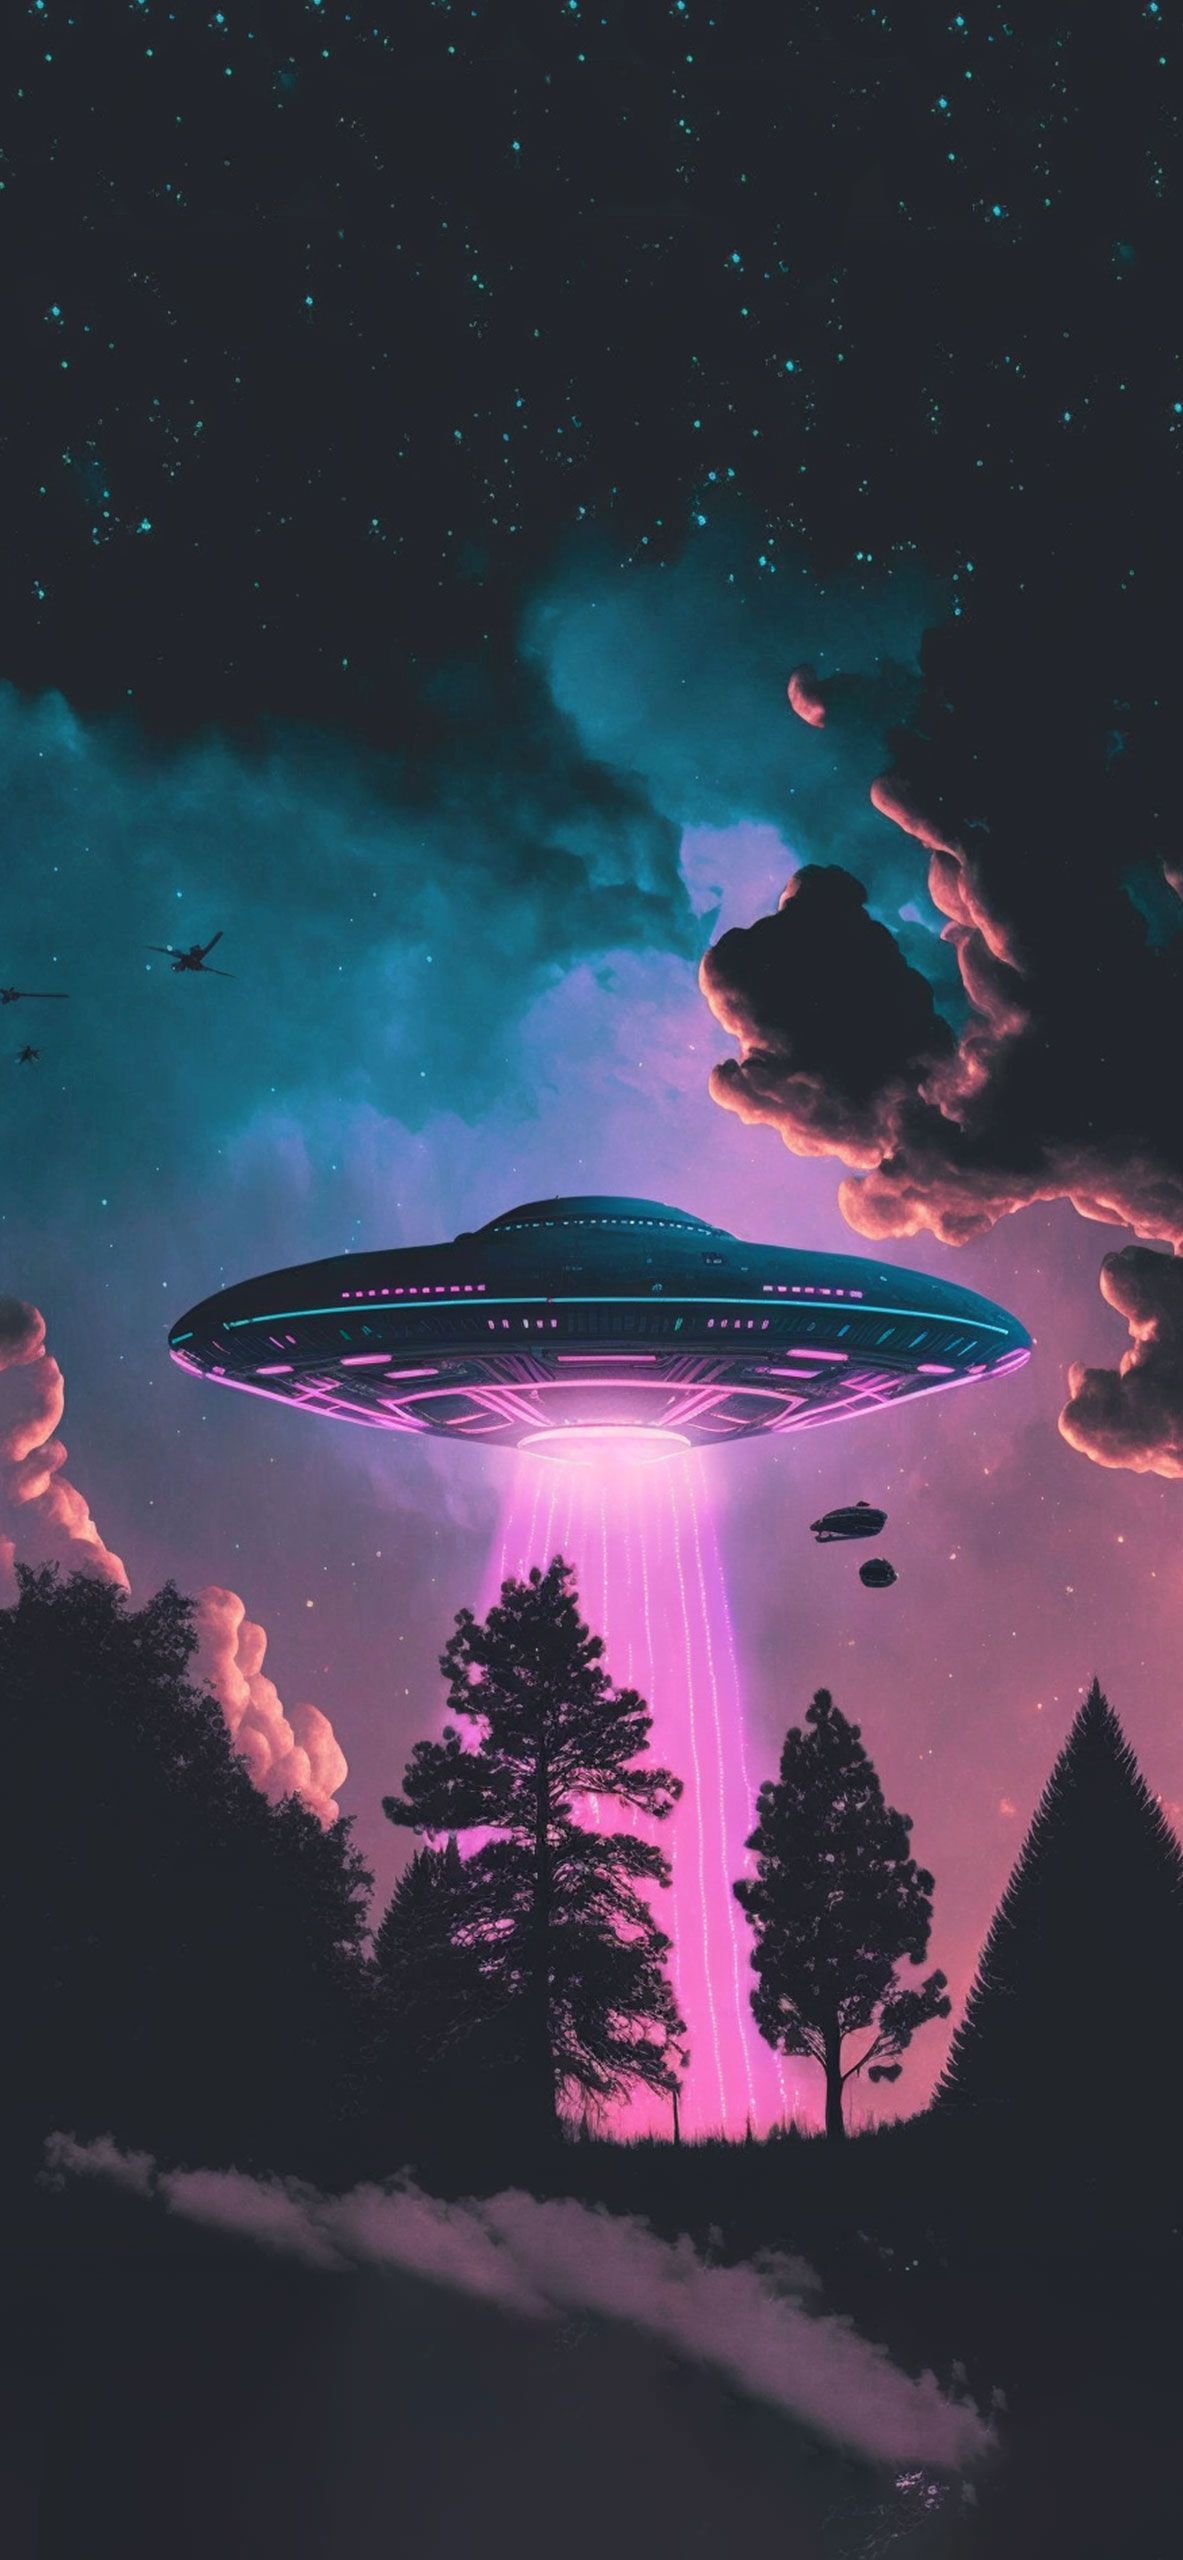 Aesthetic ufo wallpaper for your phone - Alien, art